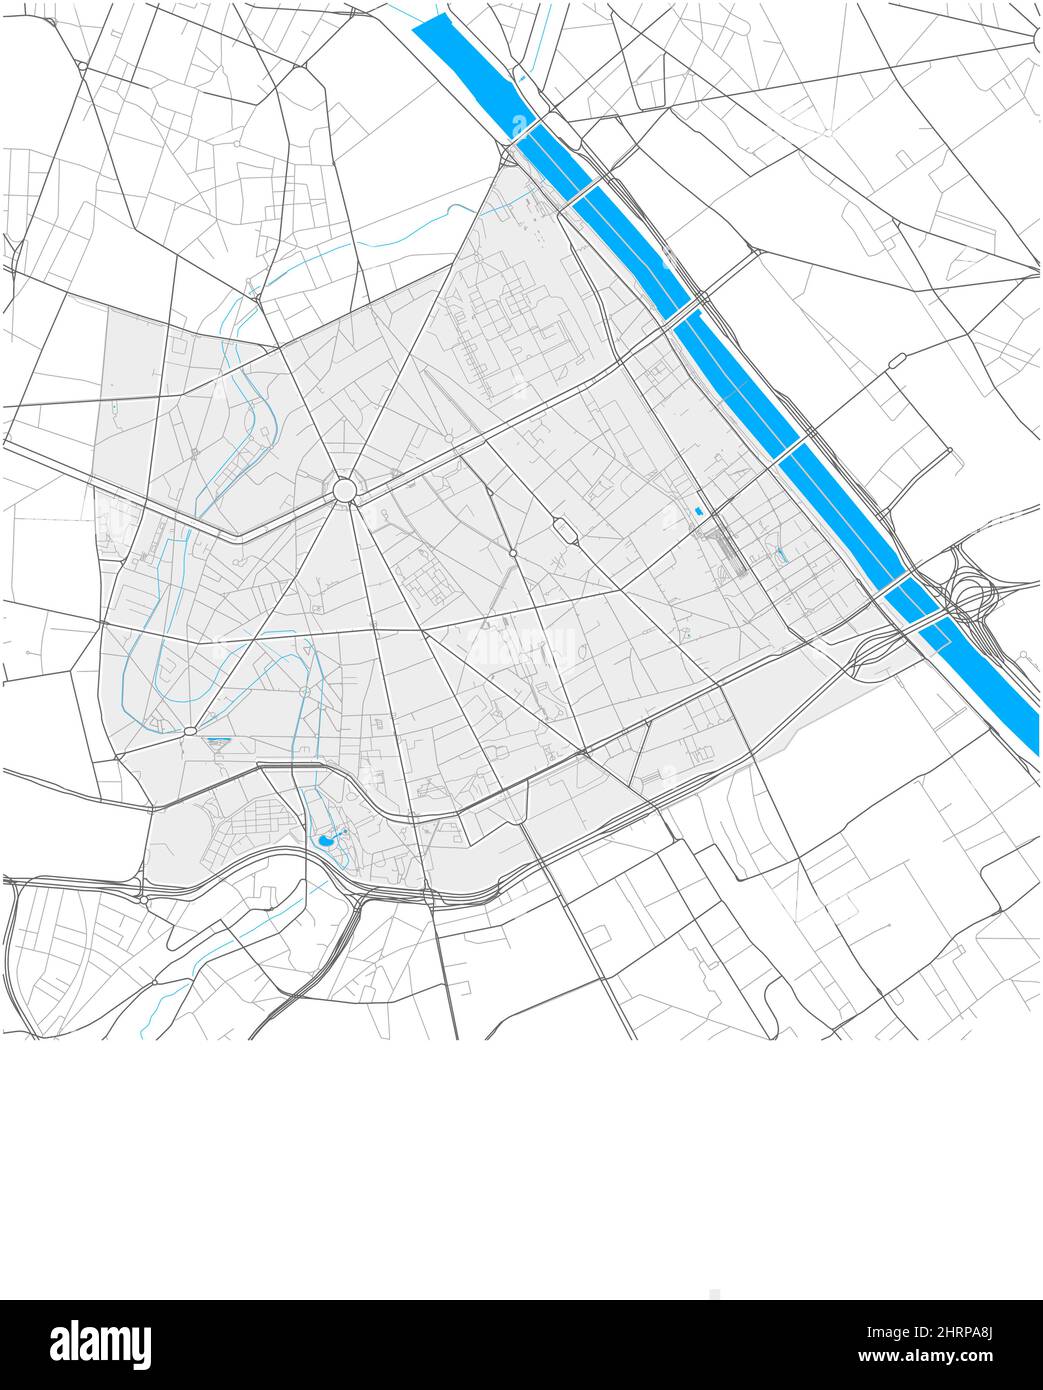 13th Arrondissement, Parigi, FRANCIA, mappa vettoriale ad alto dettaglio con confini della città e percorsi modificabili. Contorni bianchi per le strade principali. Molti percorsi più piccoli. Illustrazione Vettoriale